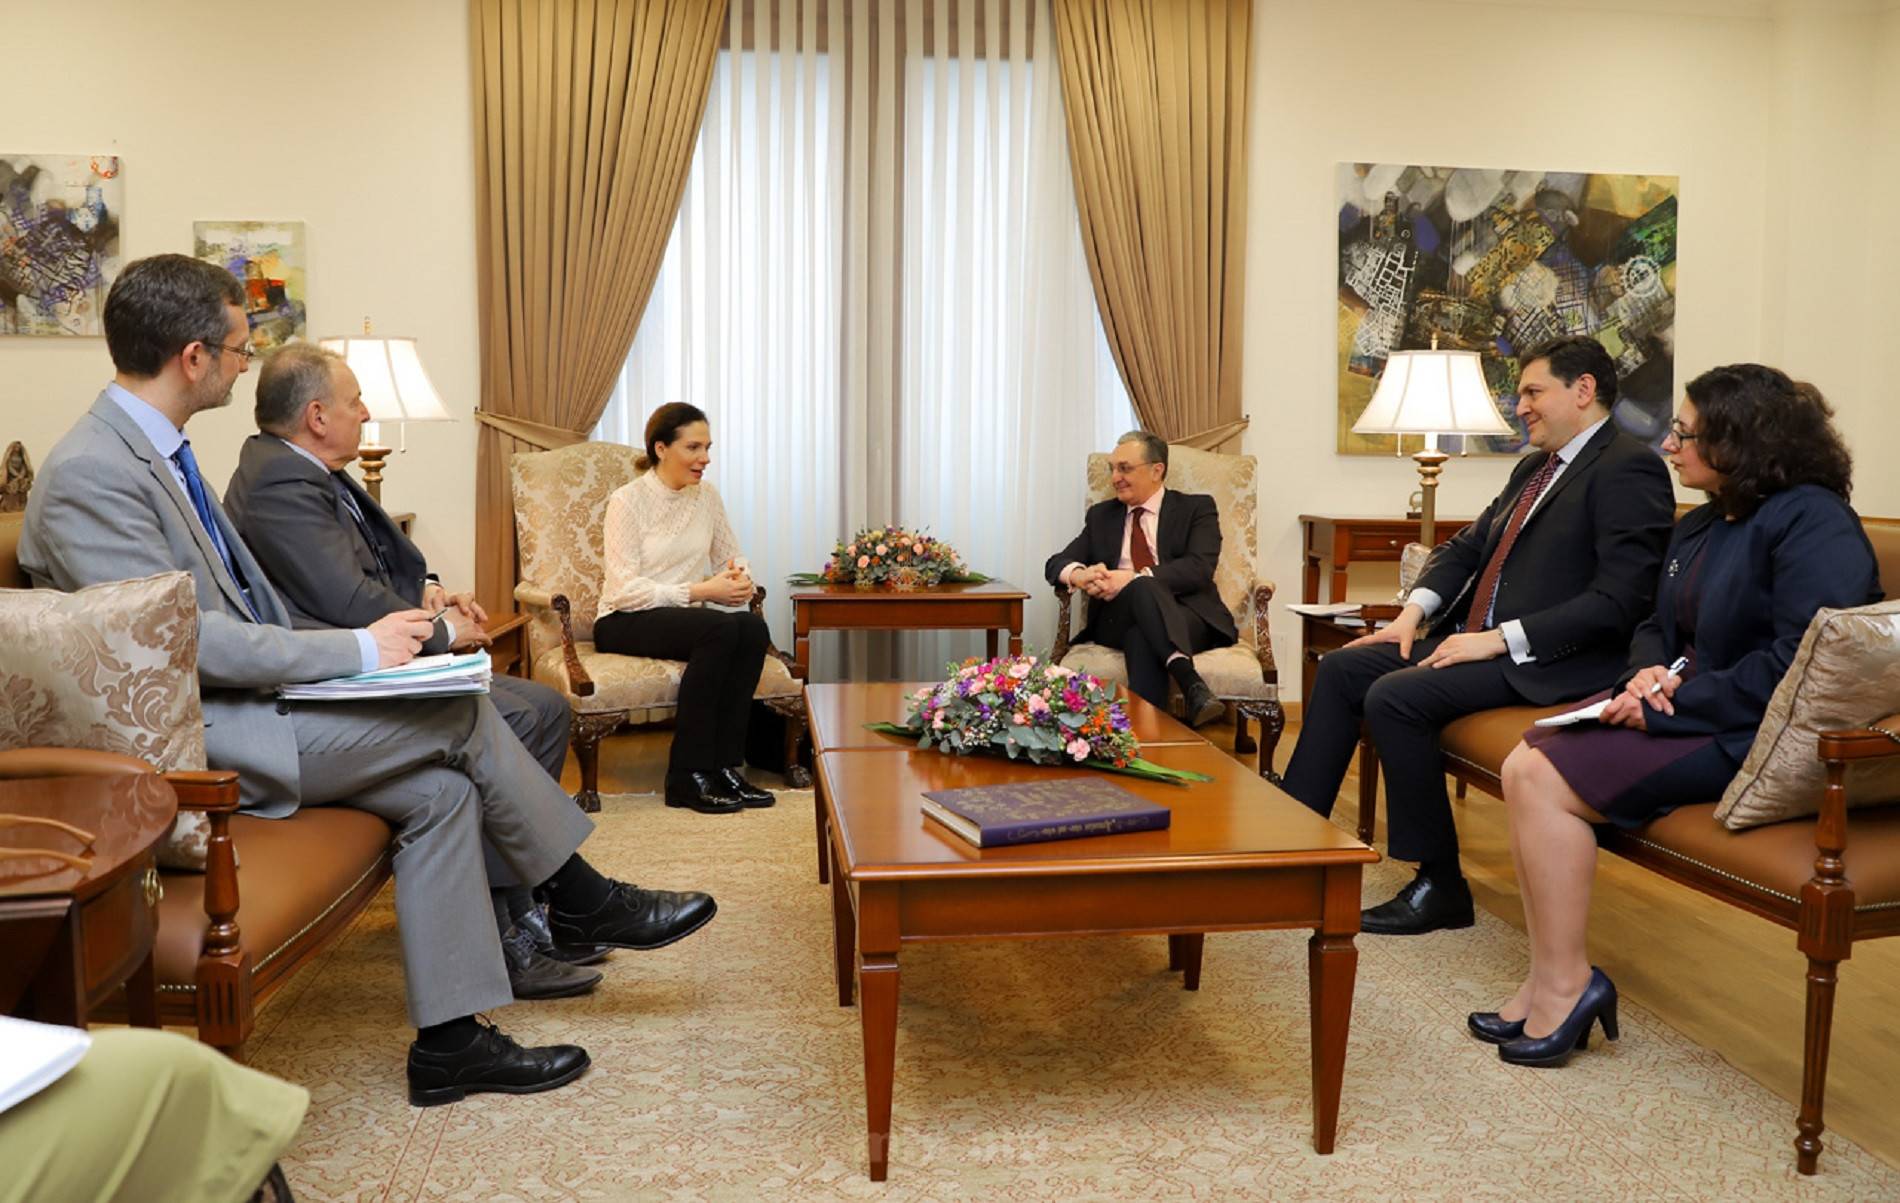 Министр представил содокладчикам ПАСЕ внешнеполитические приоритеты Армении